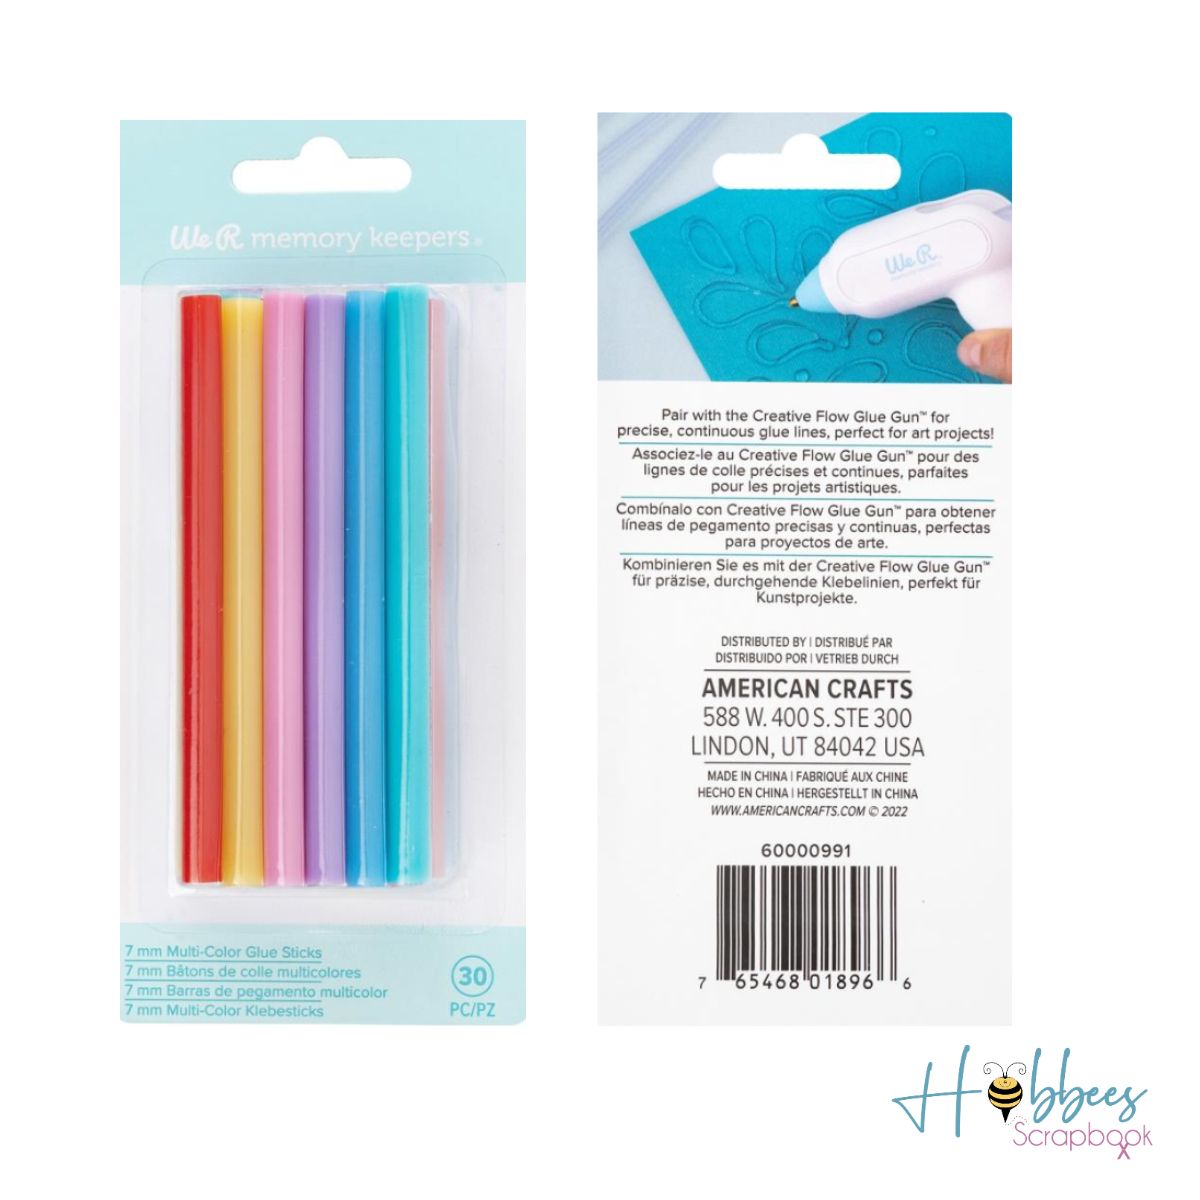 Multi-Color Glue Sticks / Barras de Pegamento Multicolor